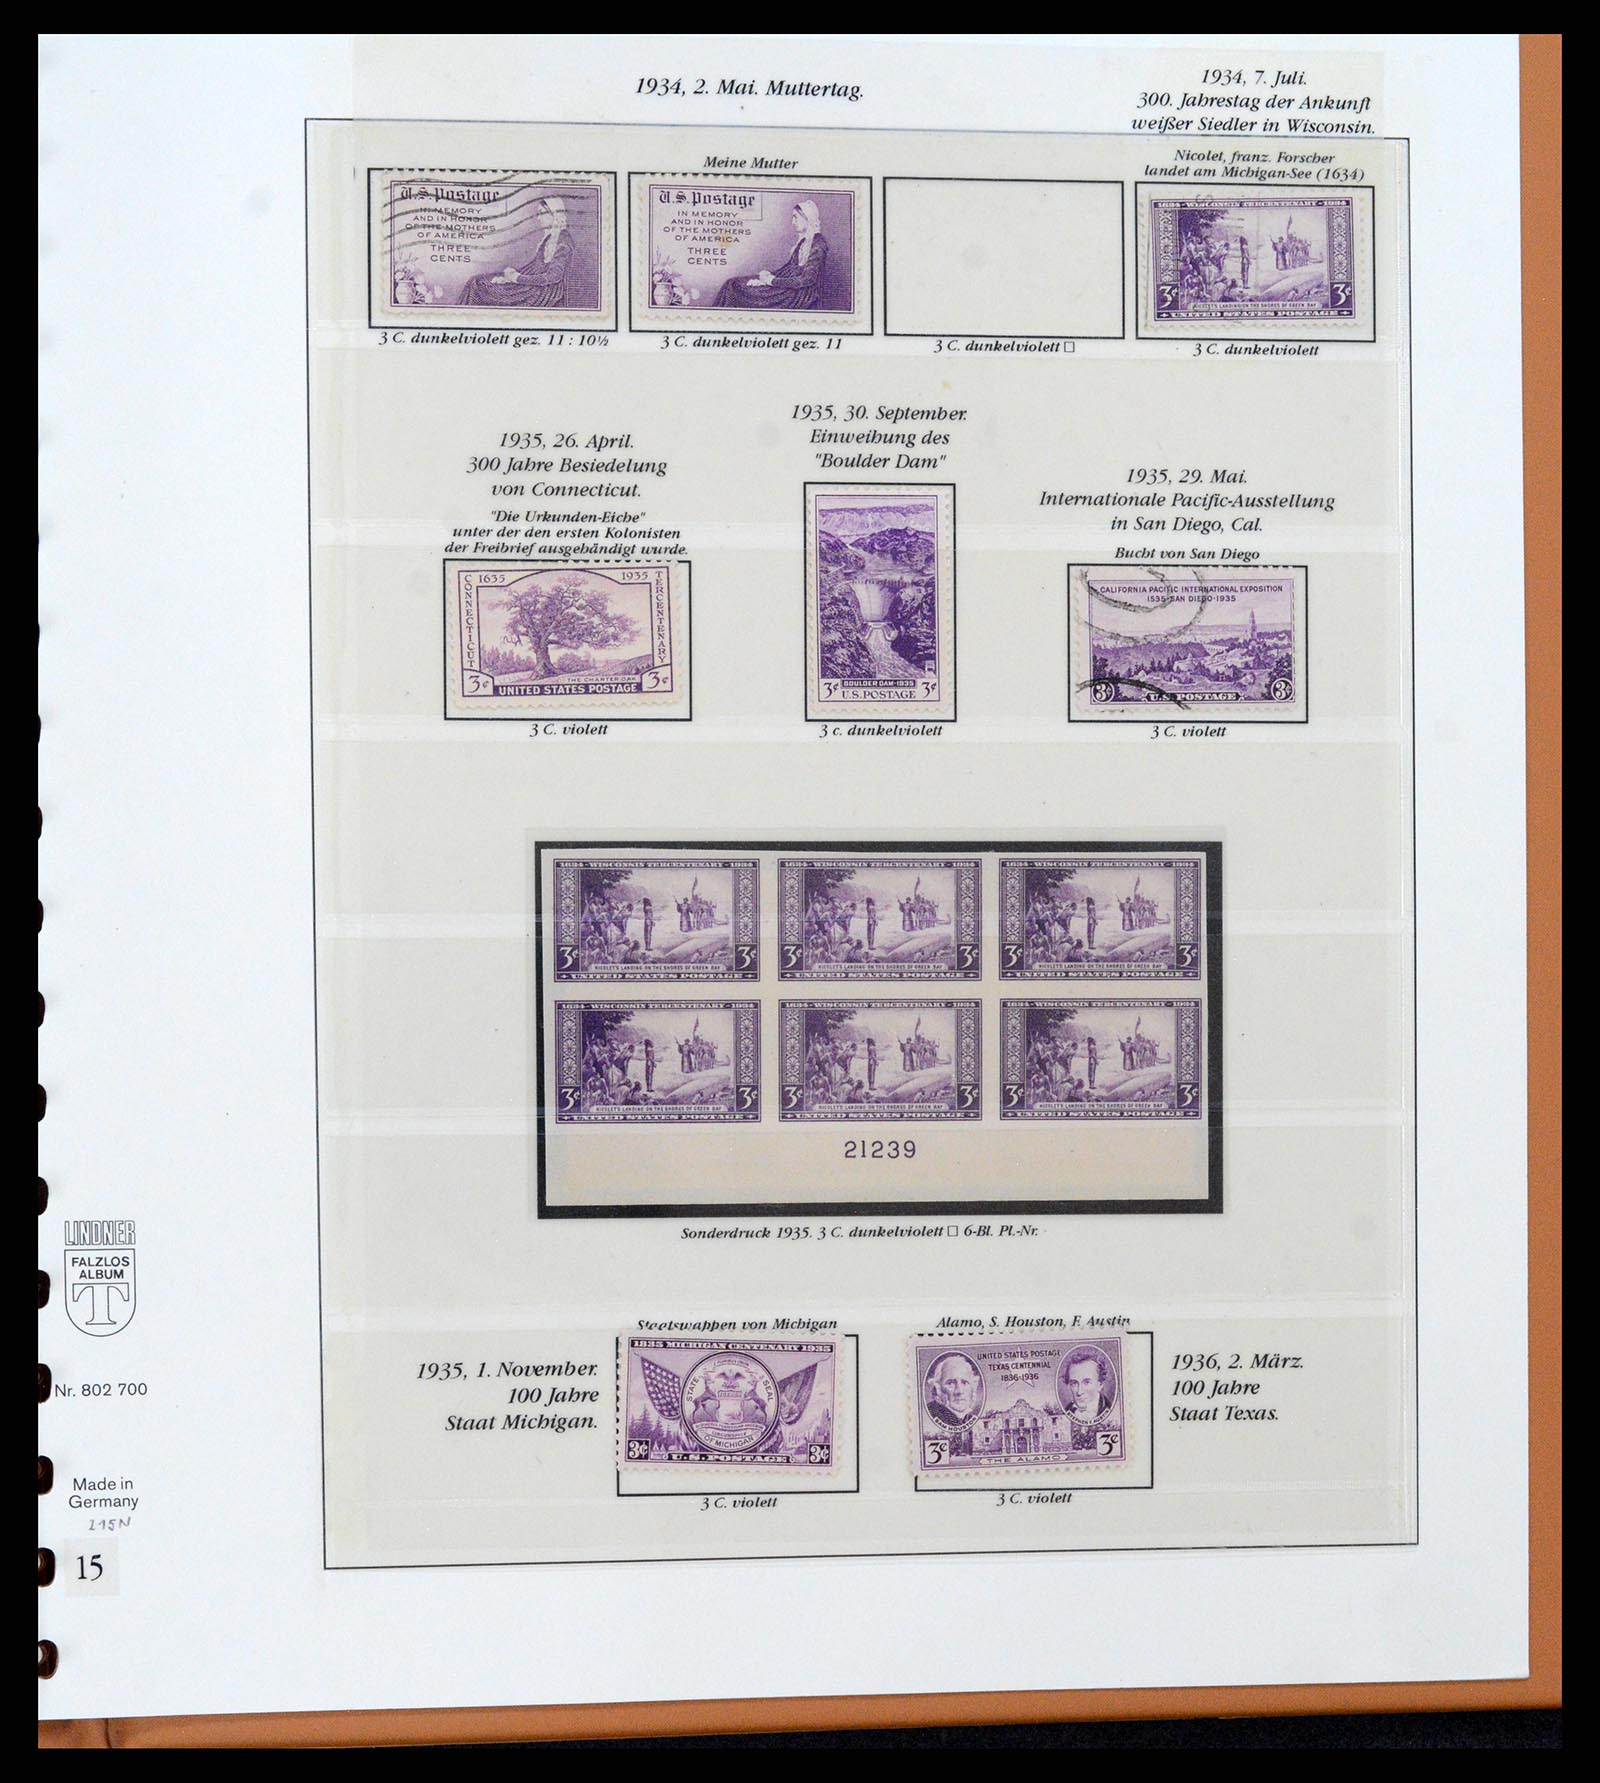 37653 083 - Stamp collection 37653 USA 1870-1954.